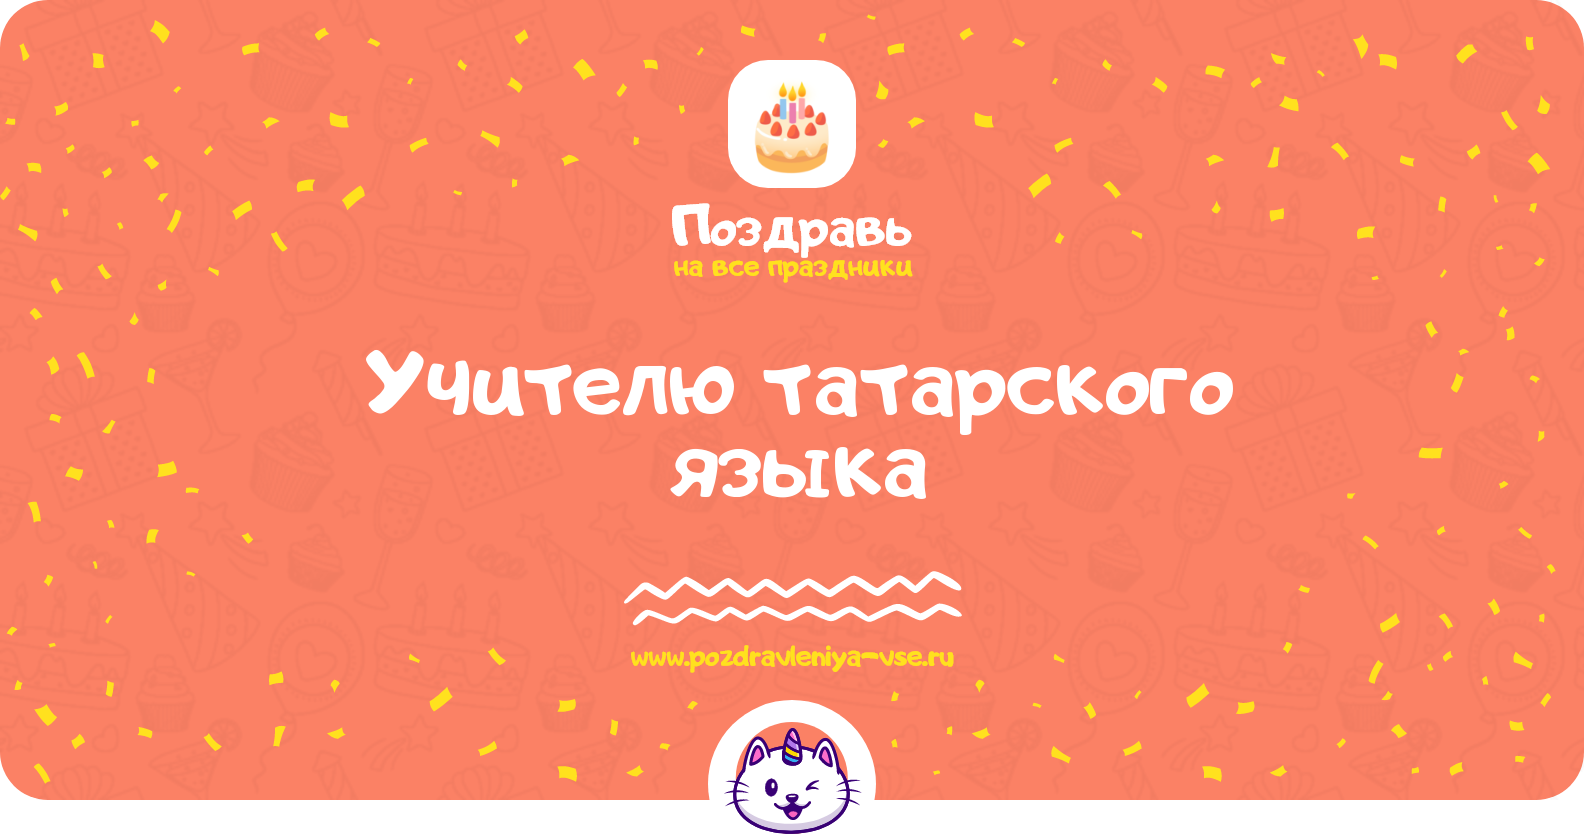 Поздравления учителю татарского языка — стихи, проза, смс